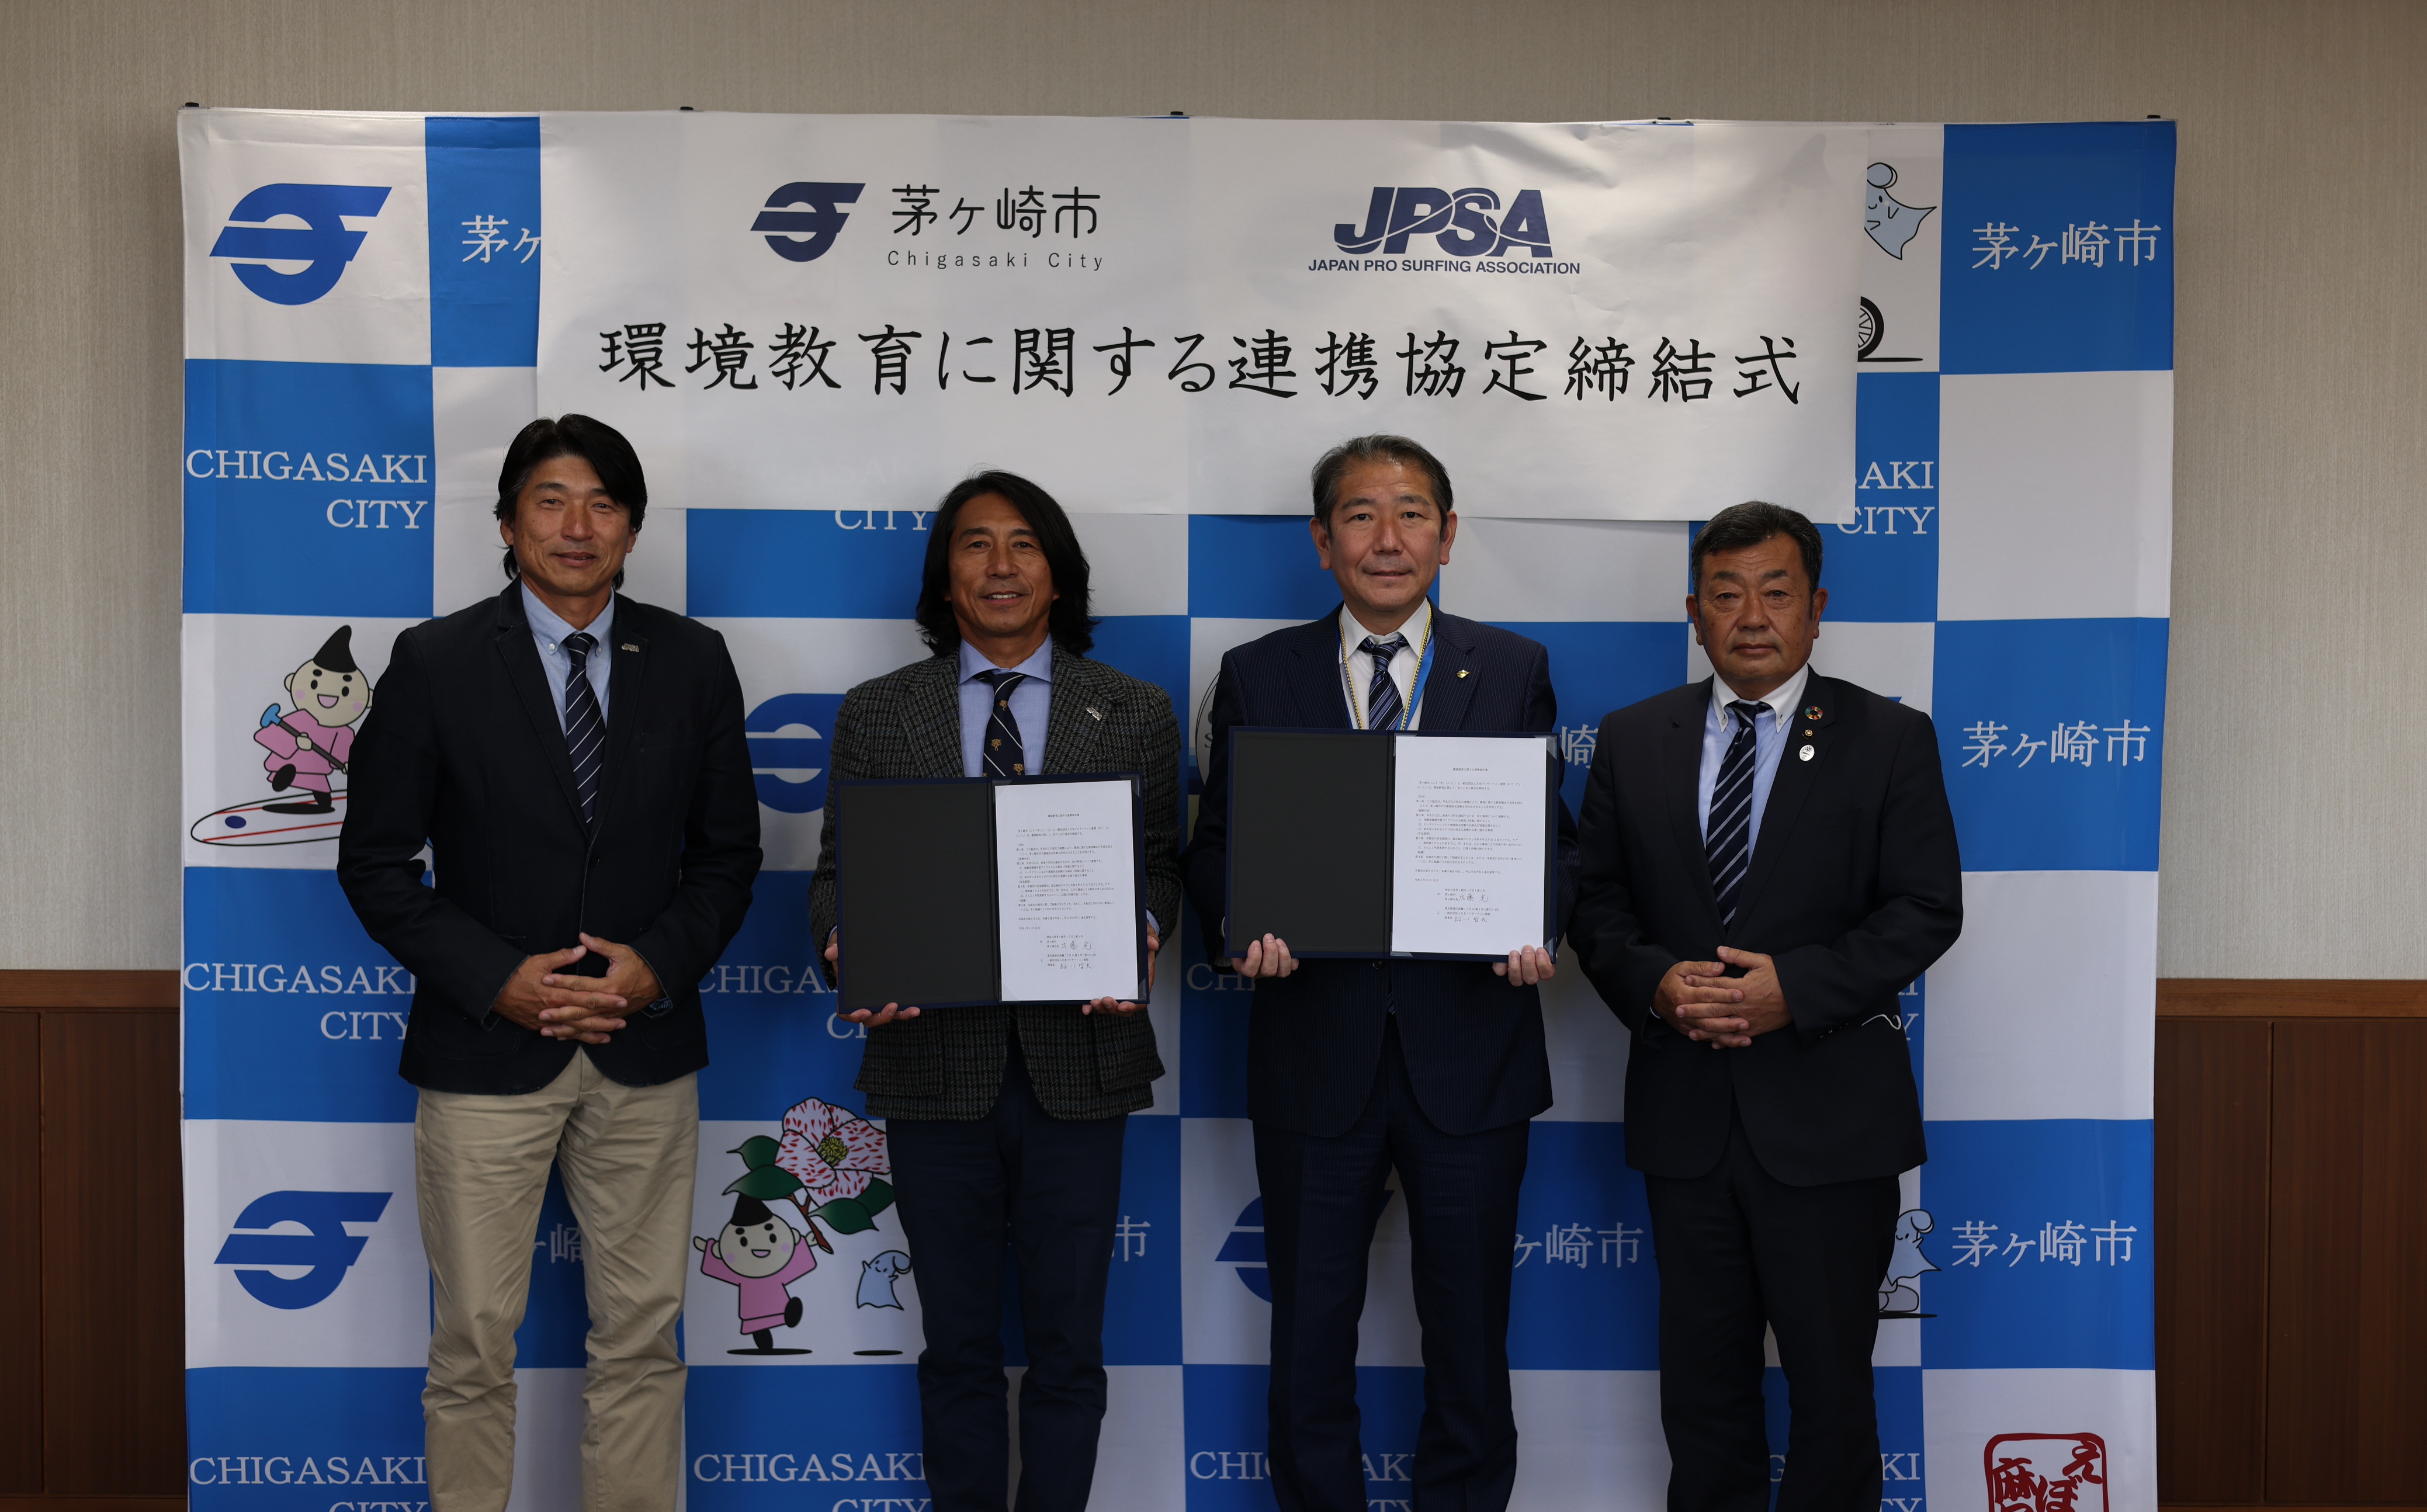 日本プロサーフィン連盟（JPSA）と茅ヶ崎市が、環境教育における連携協定を締結 ～JPSA海洋環境保全プロジェクト「ReWave」を通じ、環境保全活動の活性化を目指す～